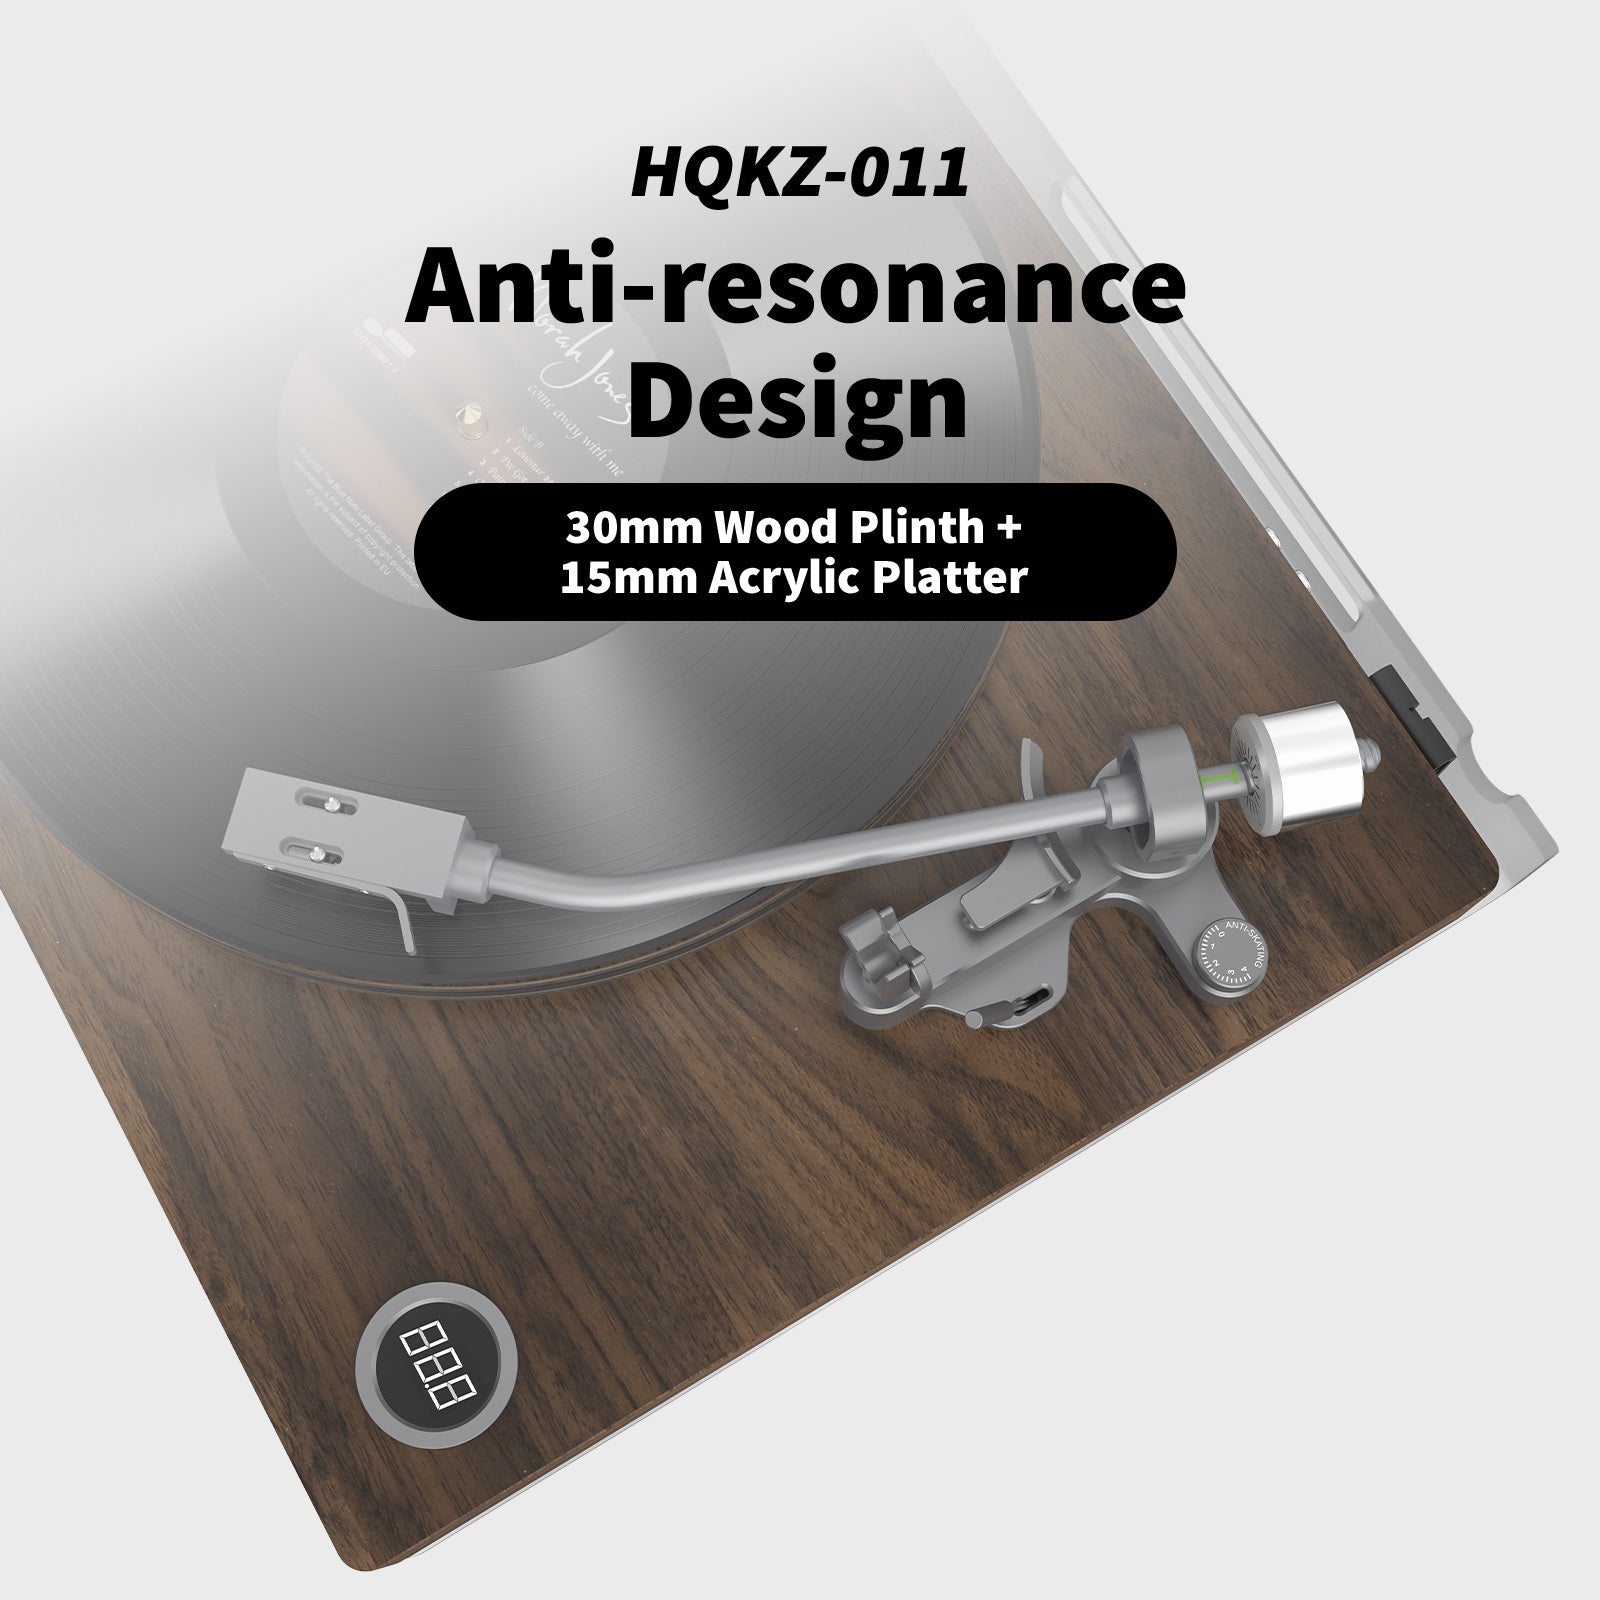 HQKZ-011 Retro Hi-Fi Vinyl Turntable